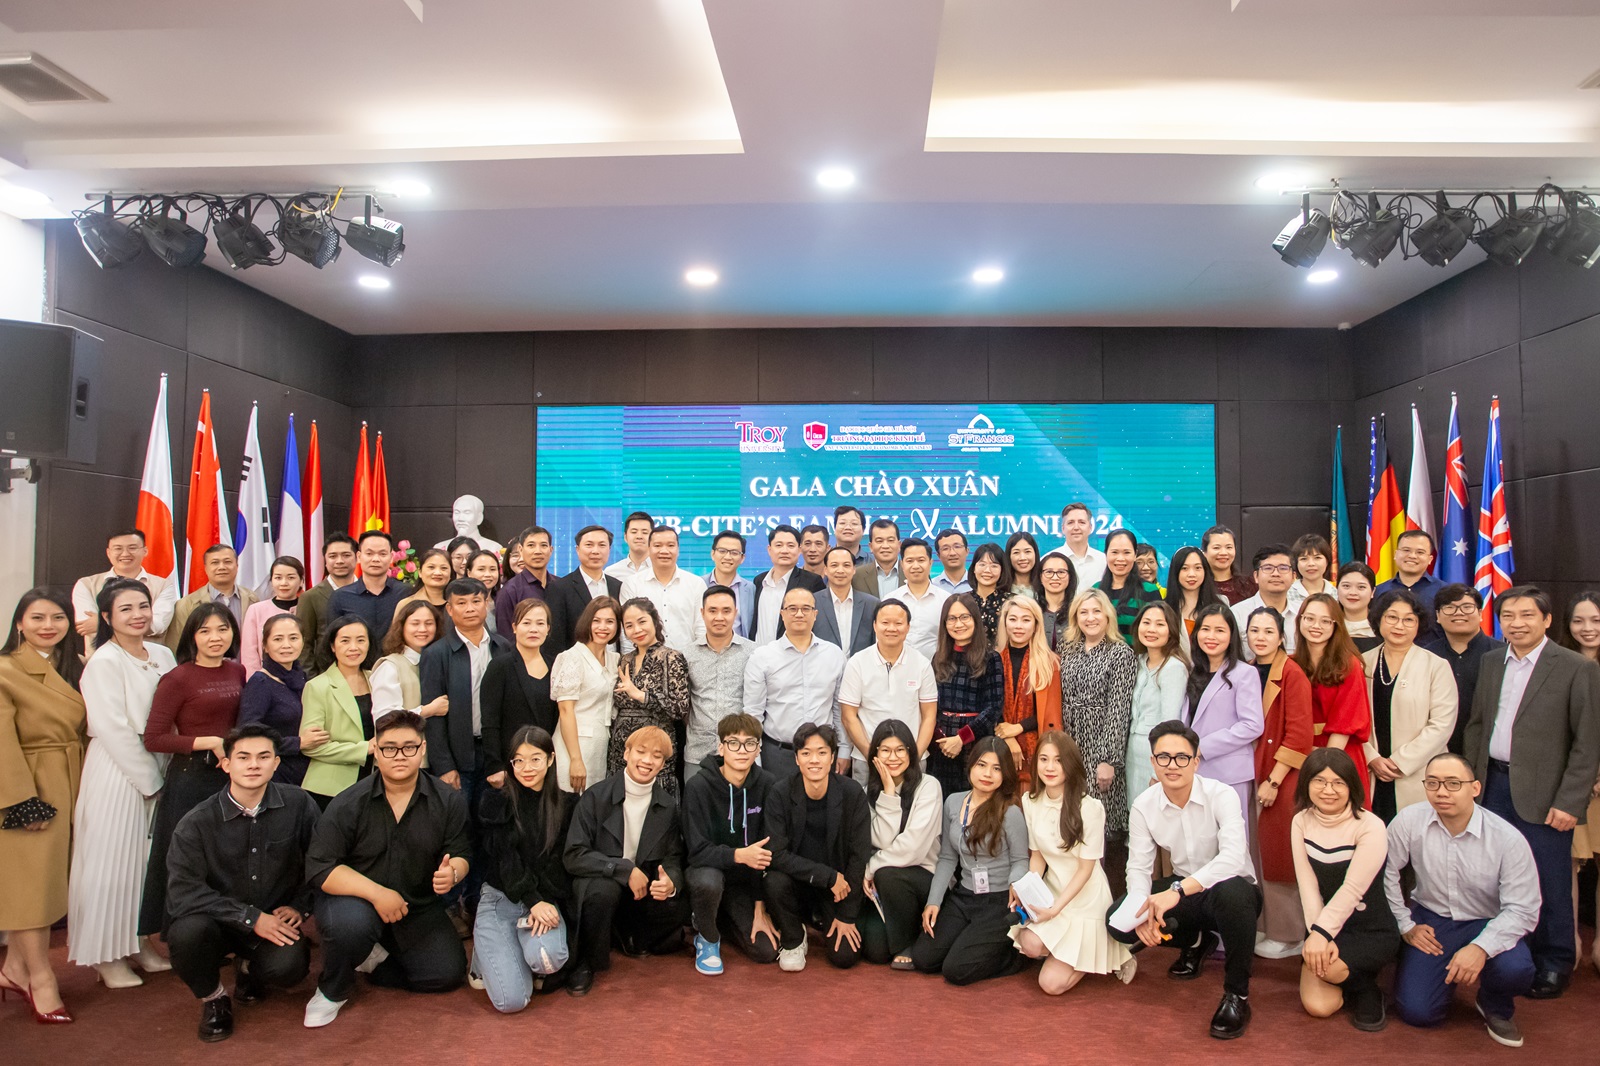 Đào tạo thế hệ sinh viên UEB - CITE có thể tự tin trong sự nghiệp và cuộc sống, dù ở Việt Nam hay ở bất cứ đâu trên thế giới!